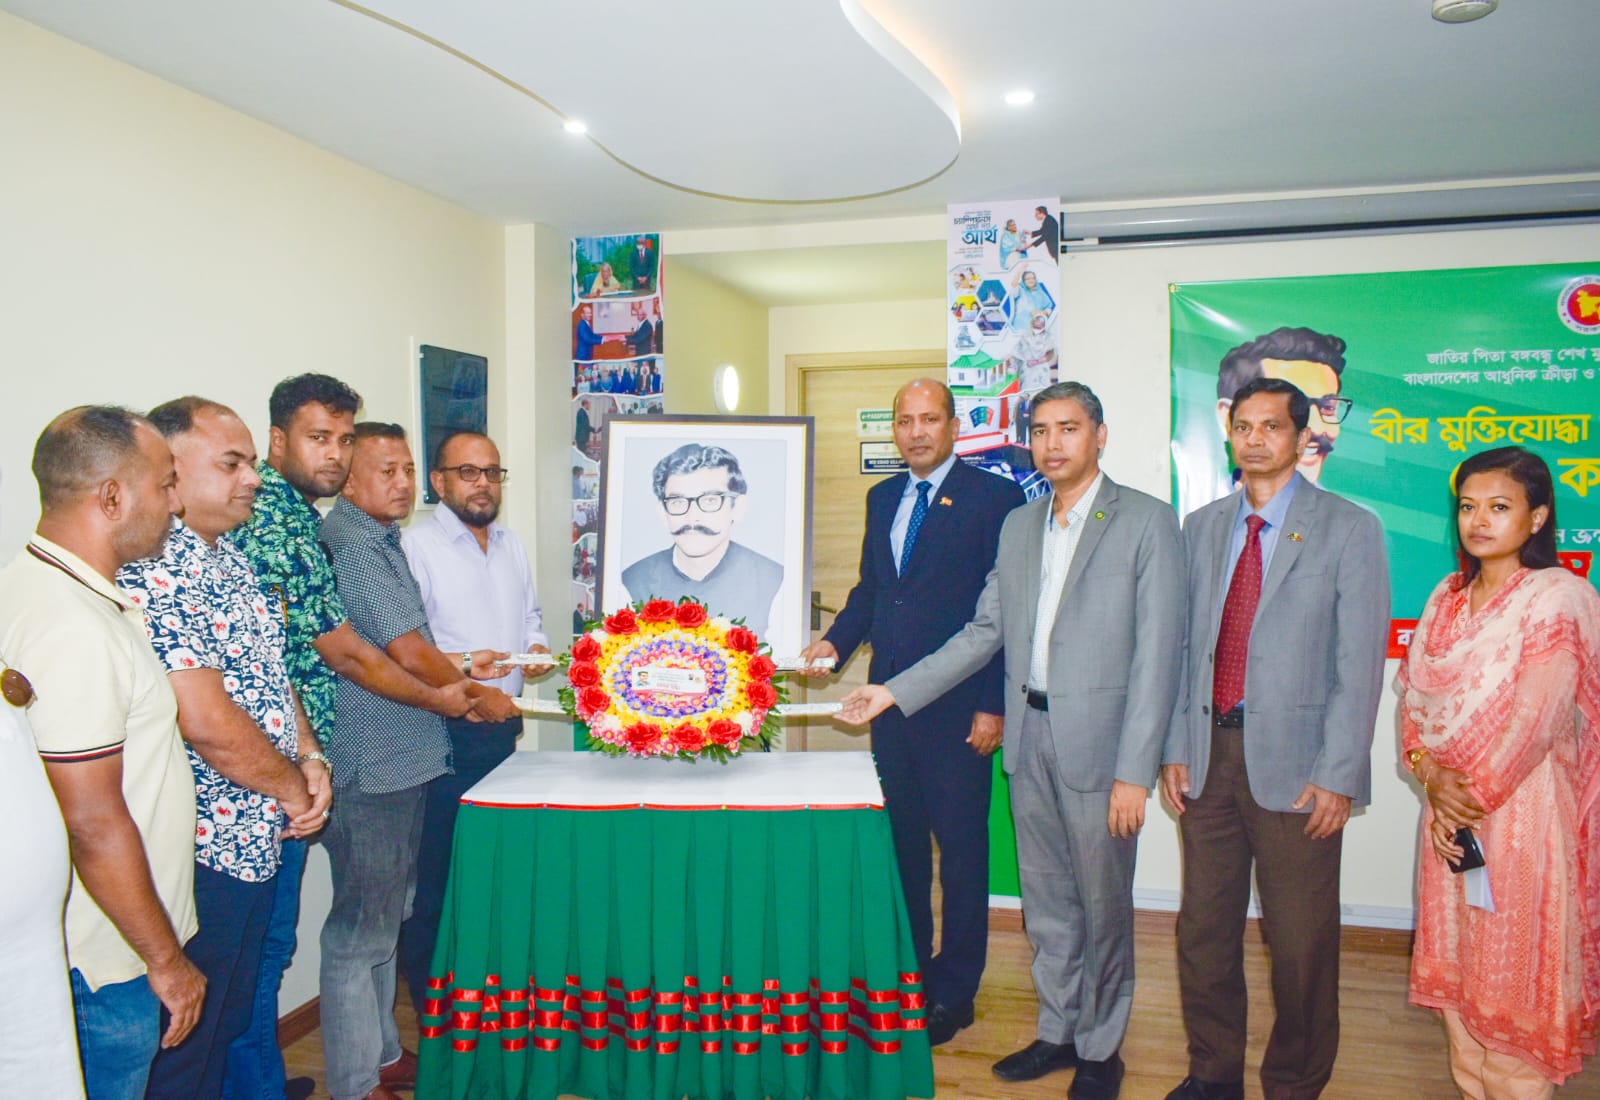 মালদ্বীপে শেখ কামালের ৭৪তম জন্মবার্ষিকী উদযাপন করল বাংলাদেশ হাই কমিশন